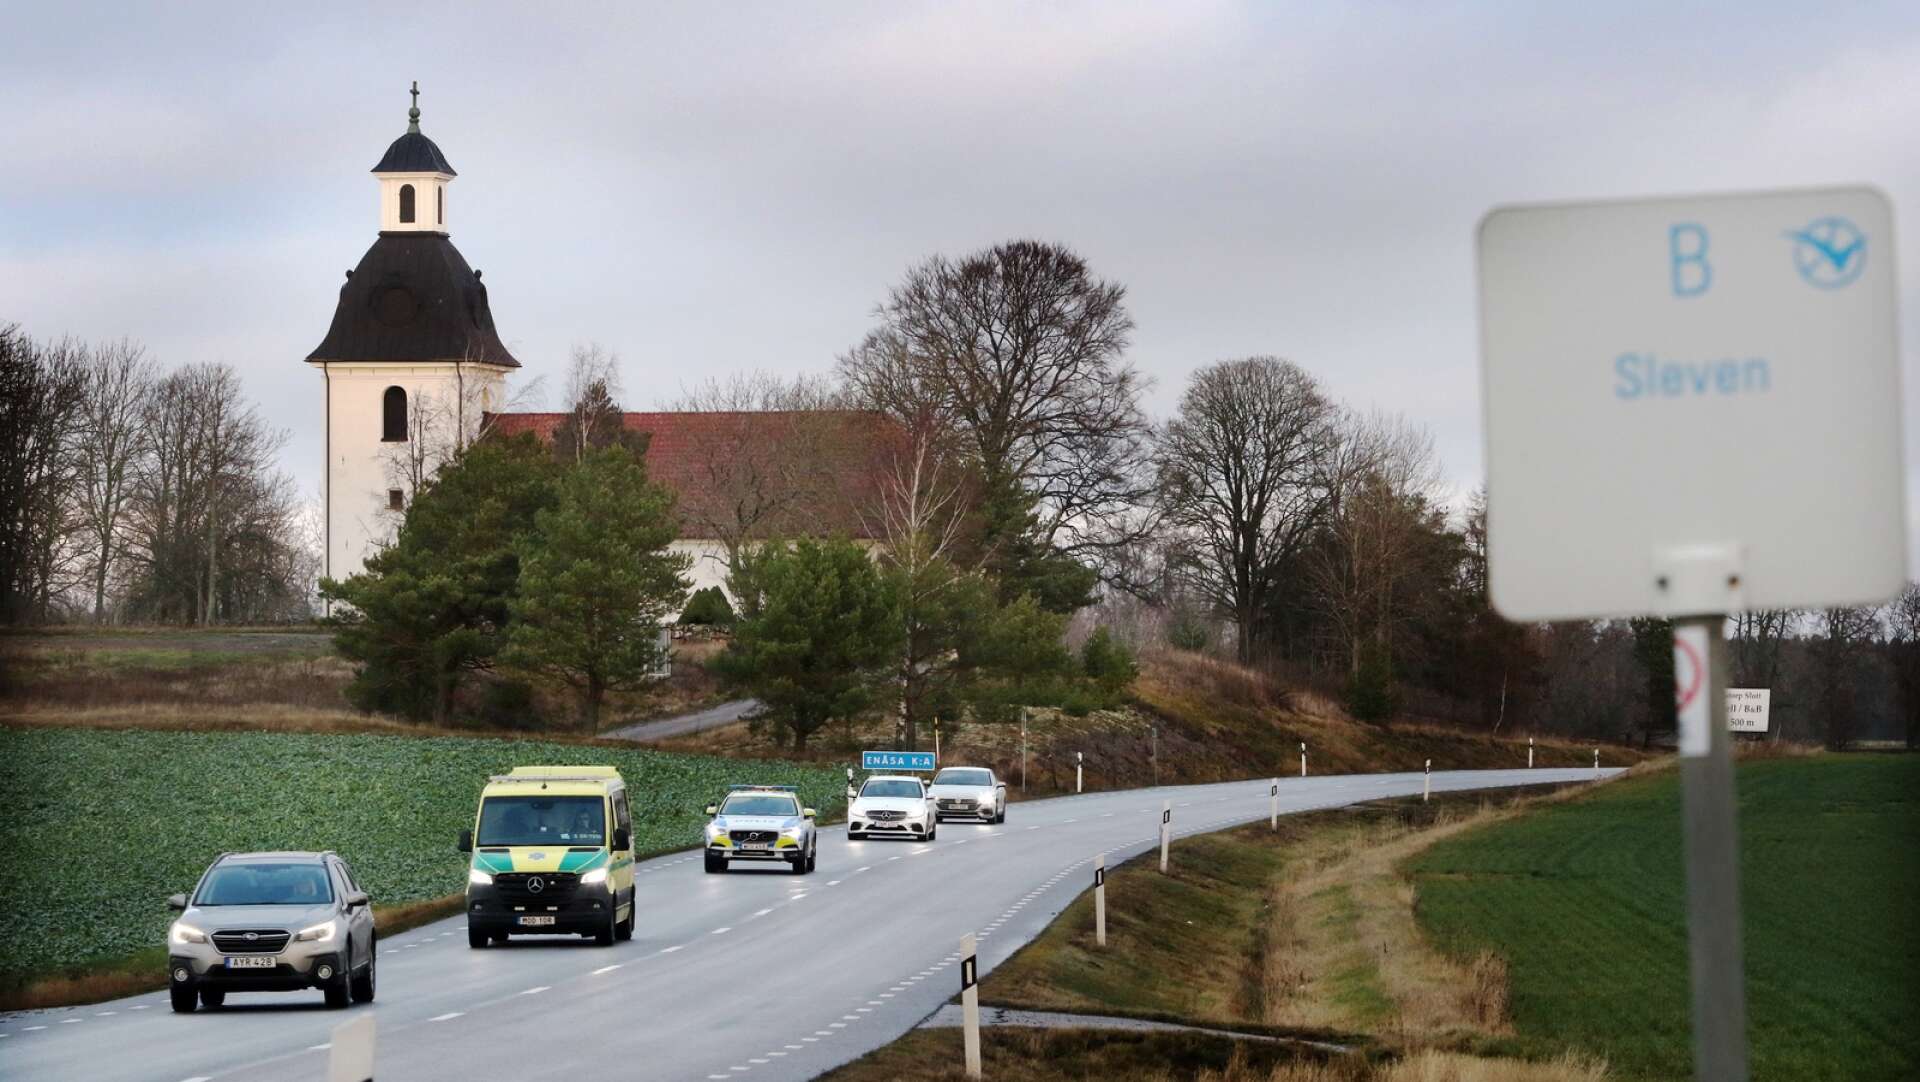 Händelsen, som resulterat i en stämningsansökan om vårdslöshet i trafik mot en 20-årig Karlstadsbo, inträffade nära Enåsa på riksväg 26.